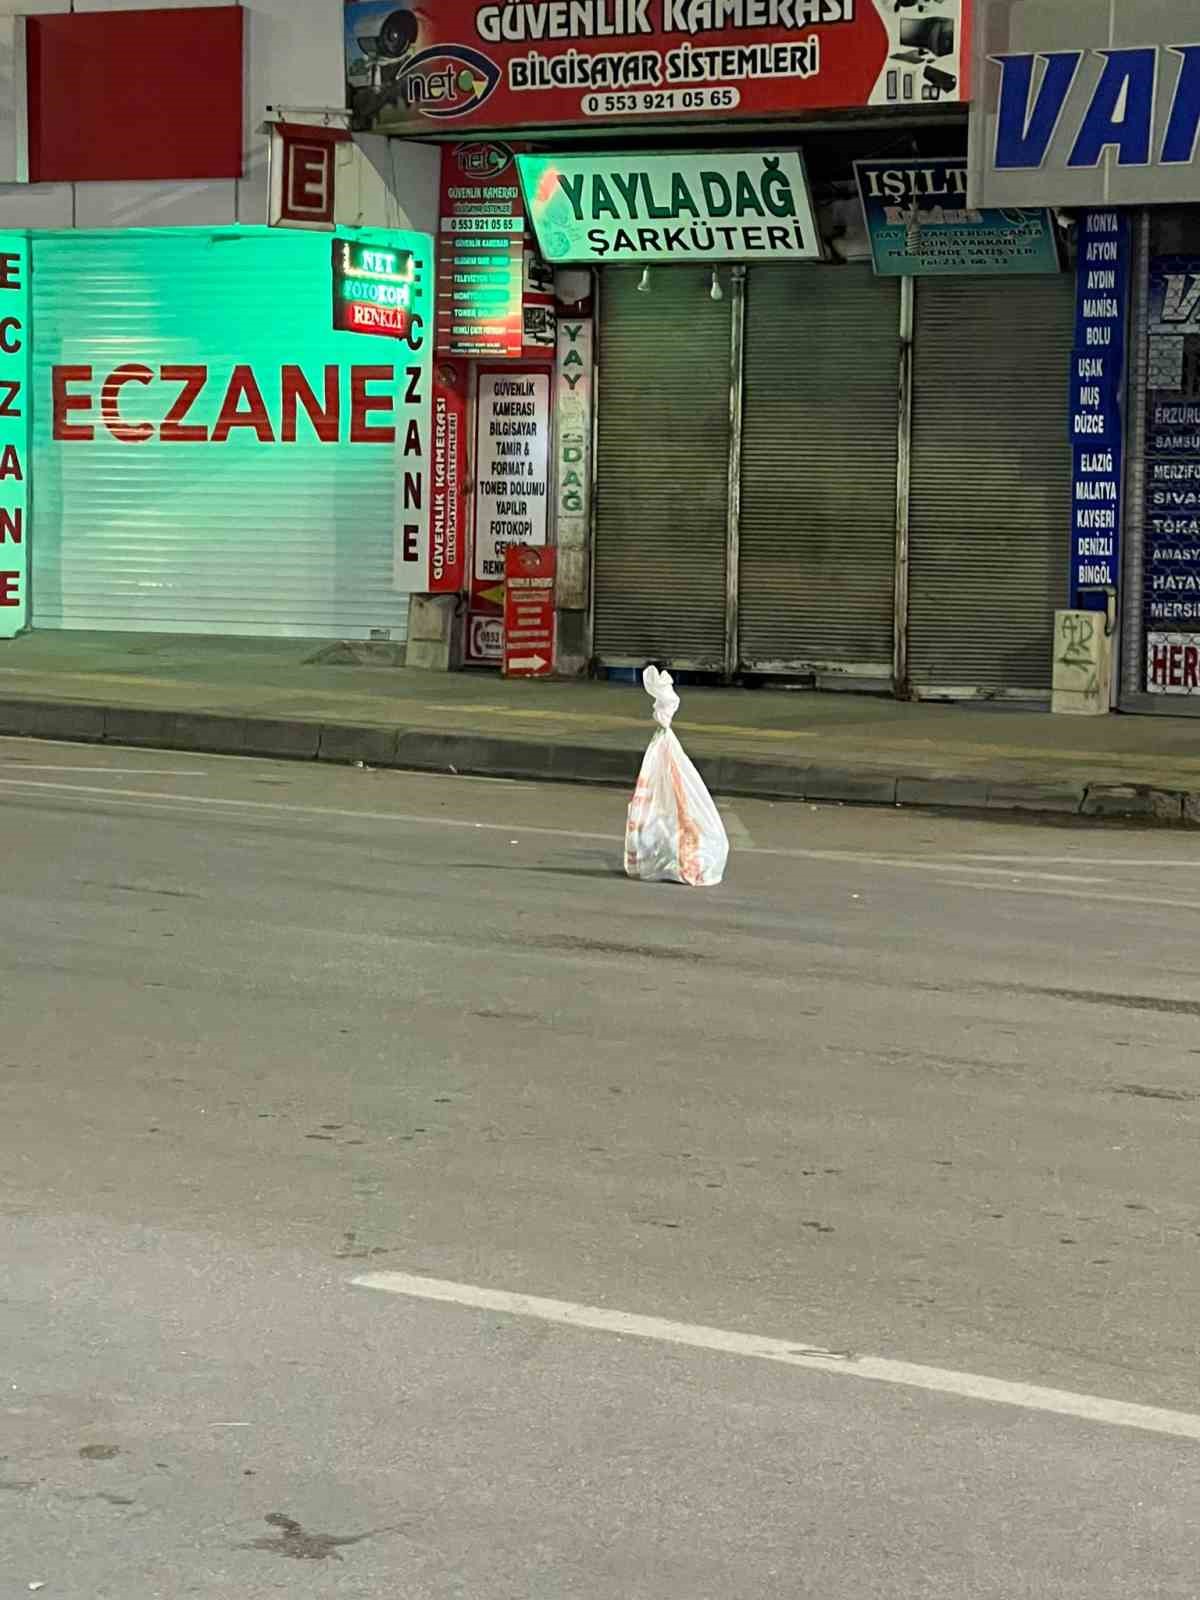 Van’da şüpheli paket alarmı: Fünyeyle patlatılan torbadan turşu bidonu ve kışlık sebze çıktı